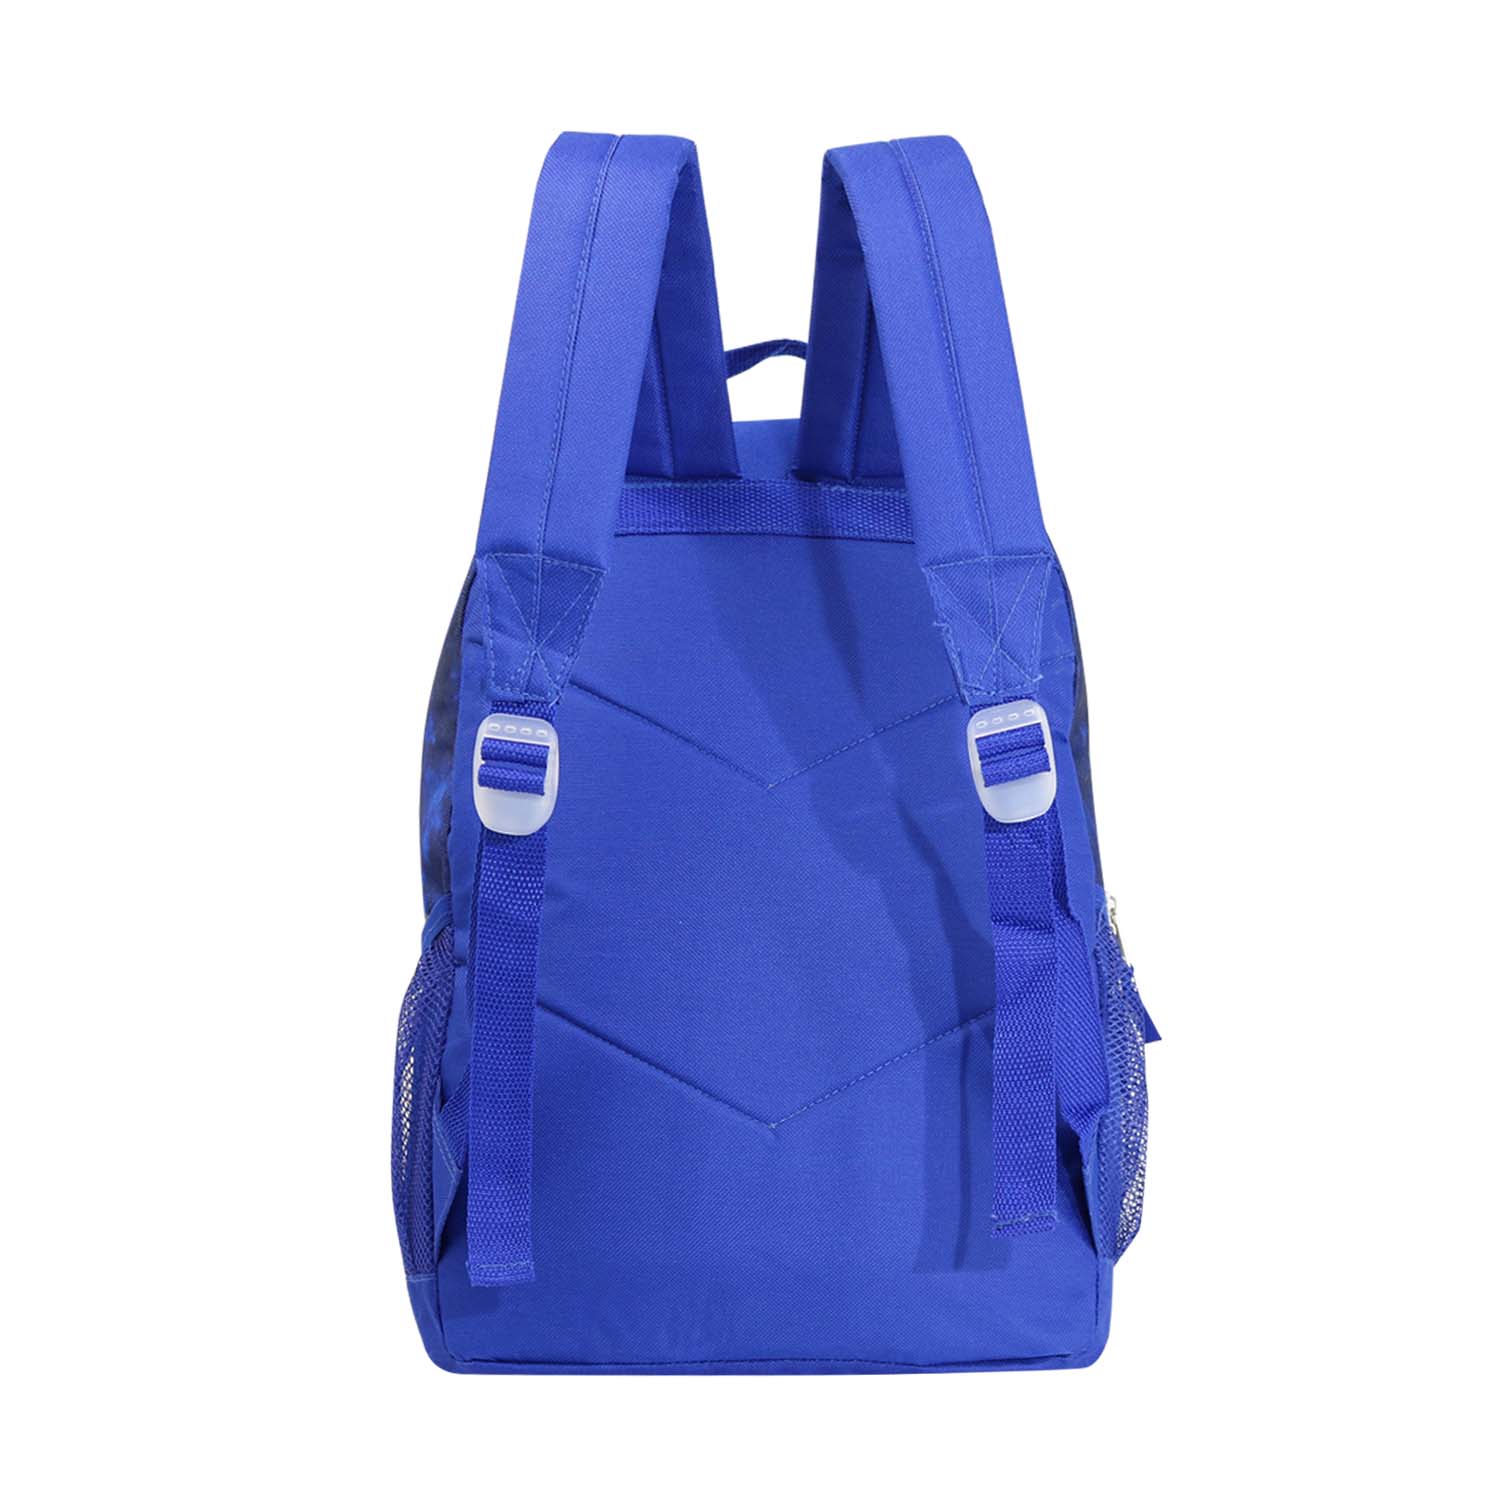 17" Bungee Wholesale Backpack In 8 Prints -  Bulk Case Of 24 Backpacks